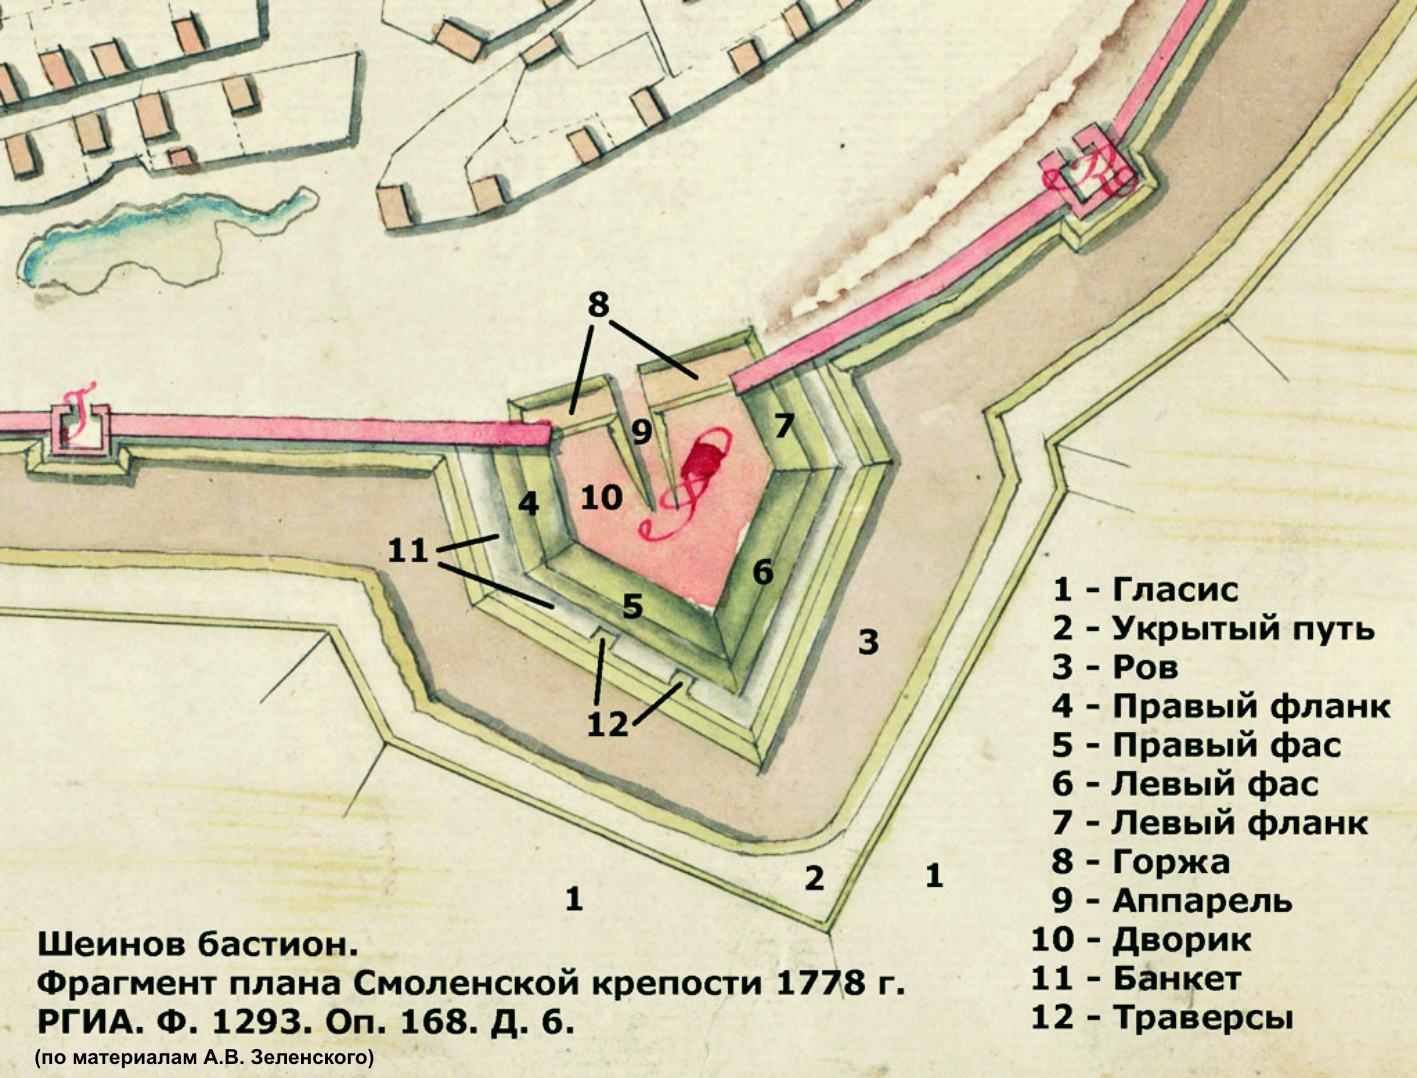 петропавловская крепость описание по